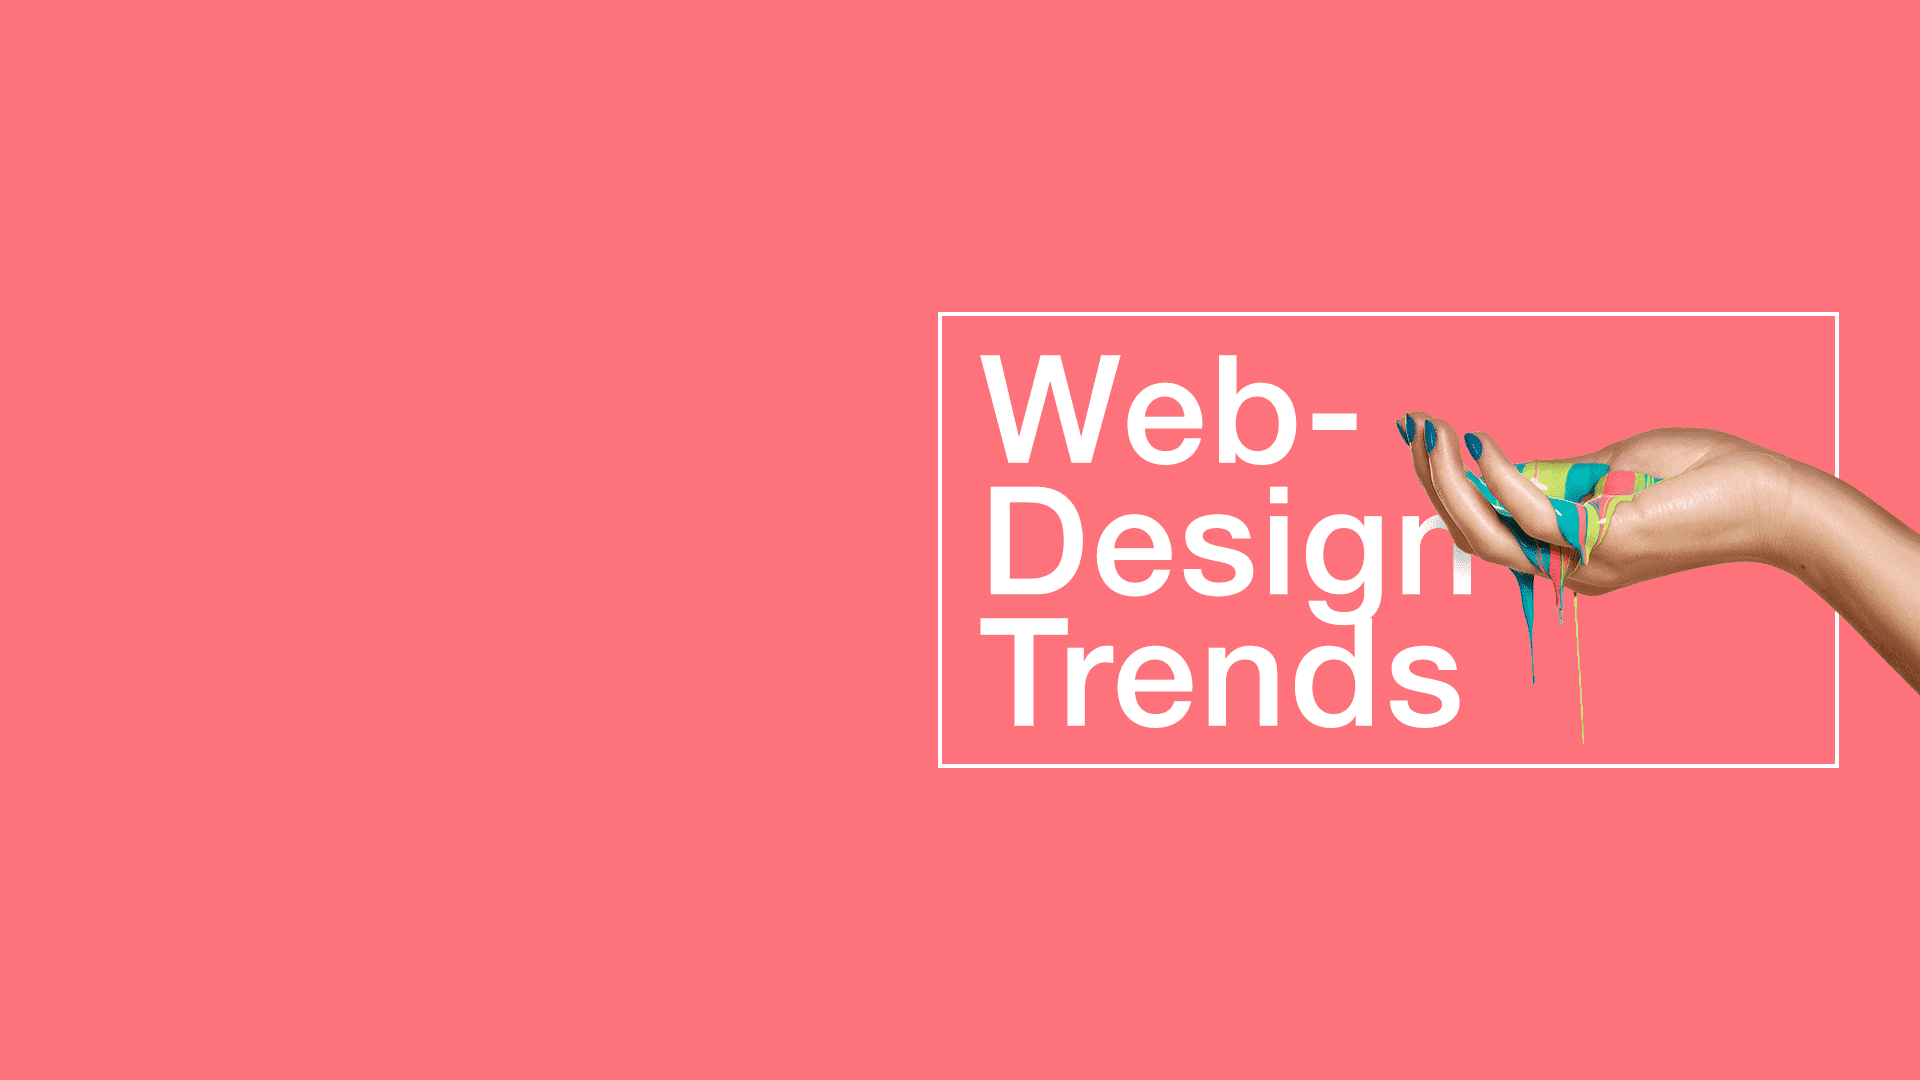 Последние тренды веб-дизайна в блоге студии интернет-решений GuruLabs